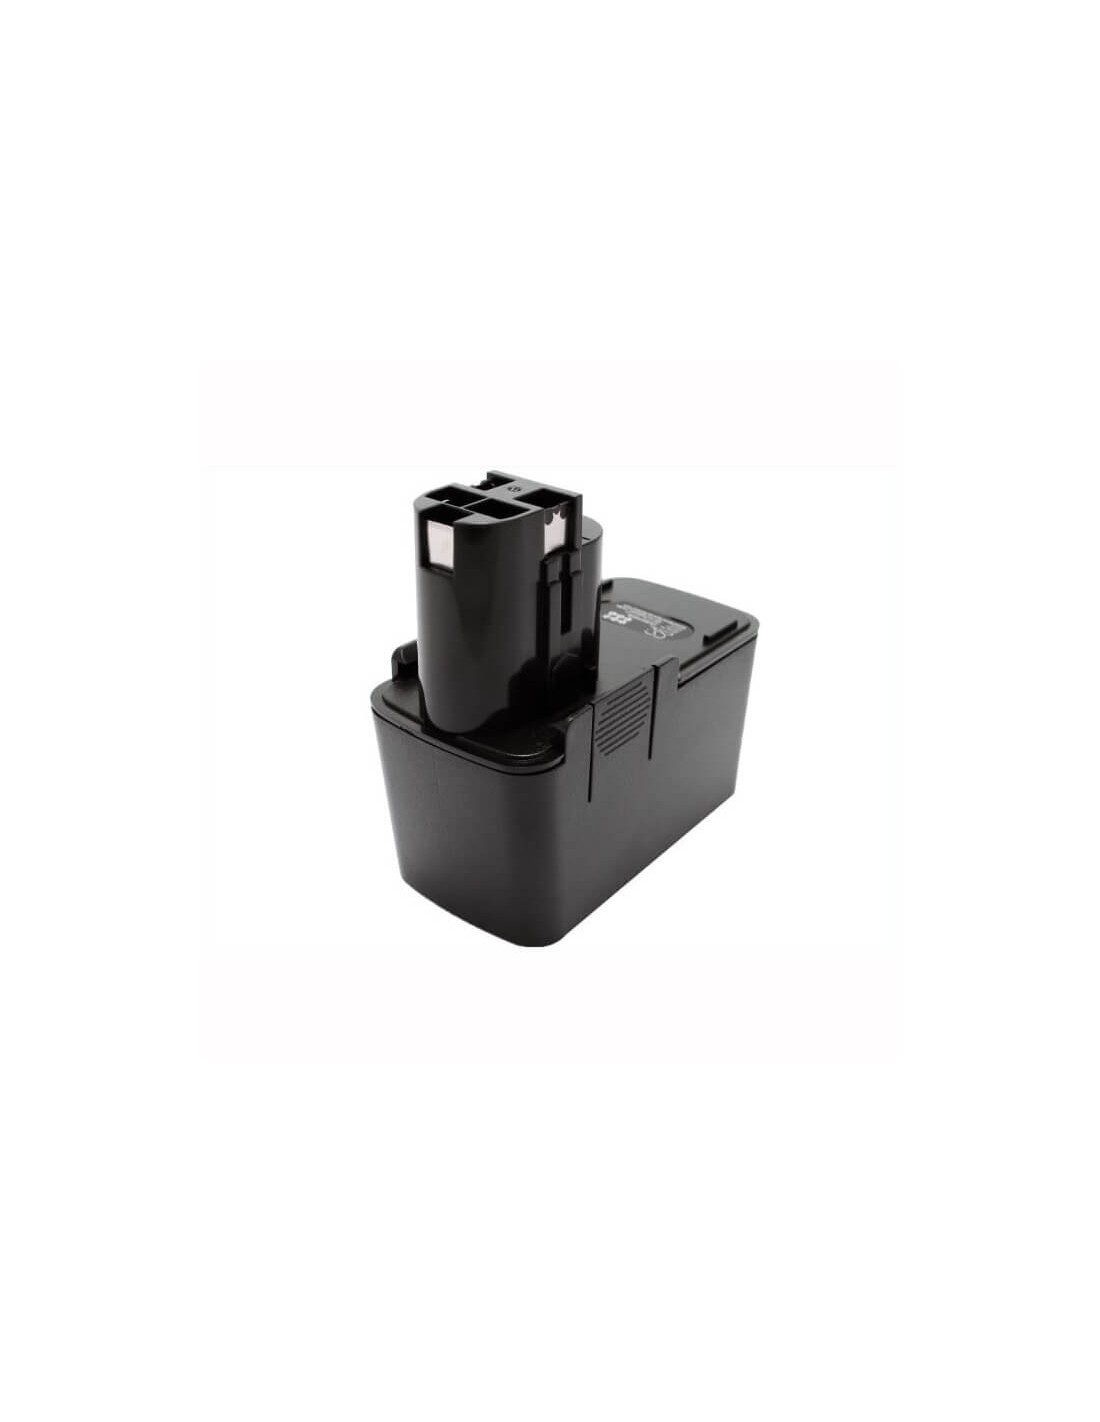 Battery for Bosch 3300k, 3305k, 330k 12V, 1500mAh - 18.00Wh